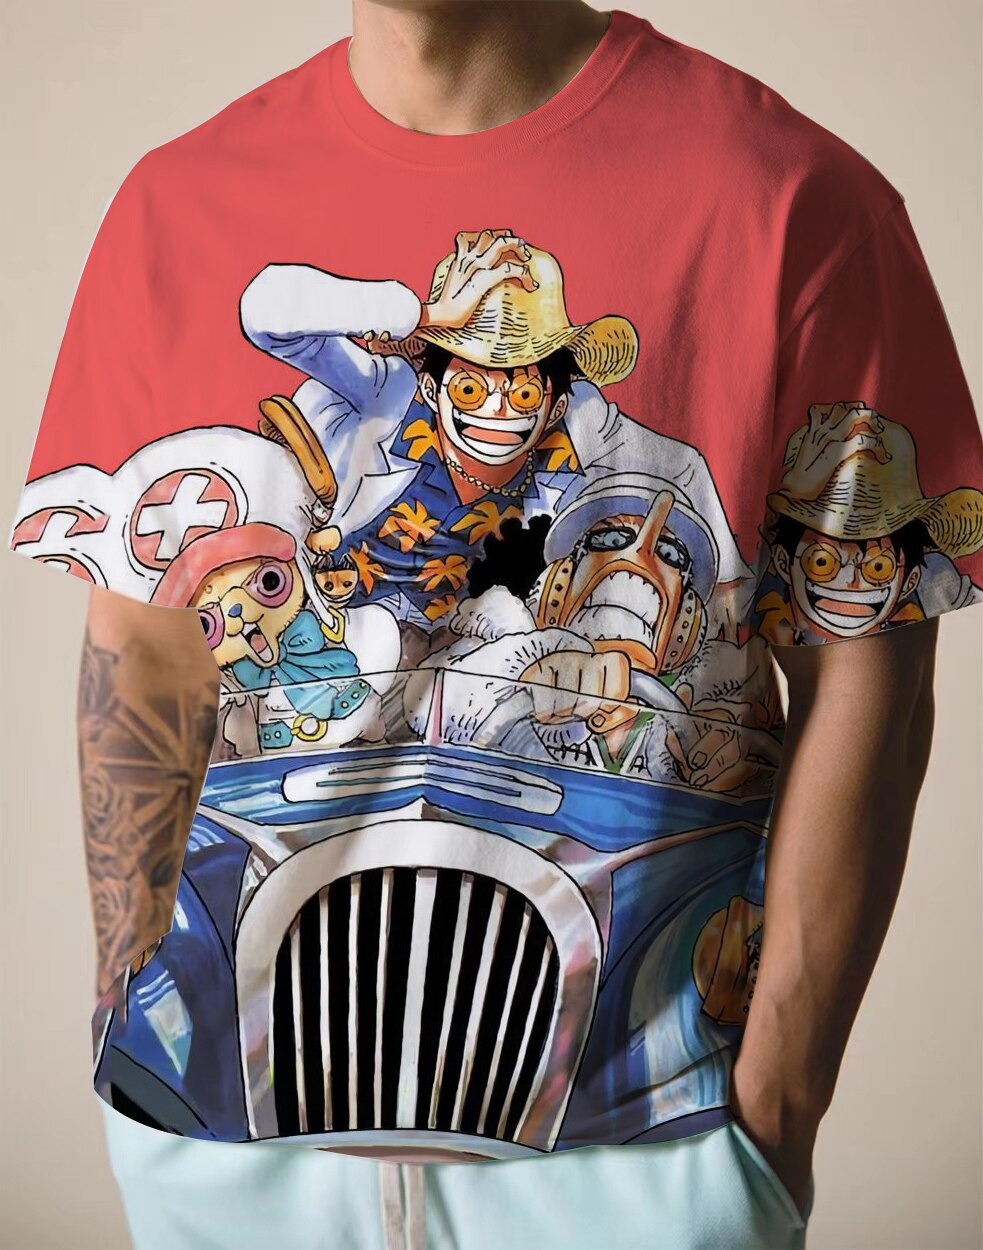 https://onepiece-merchandise.com/wp-content/uploads/2022/08/One-Piece-T-Shirt-Usopp-Chopper-and-Luffy.jpg